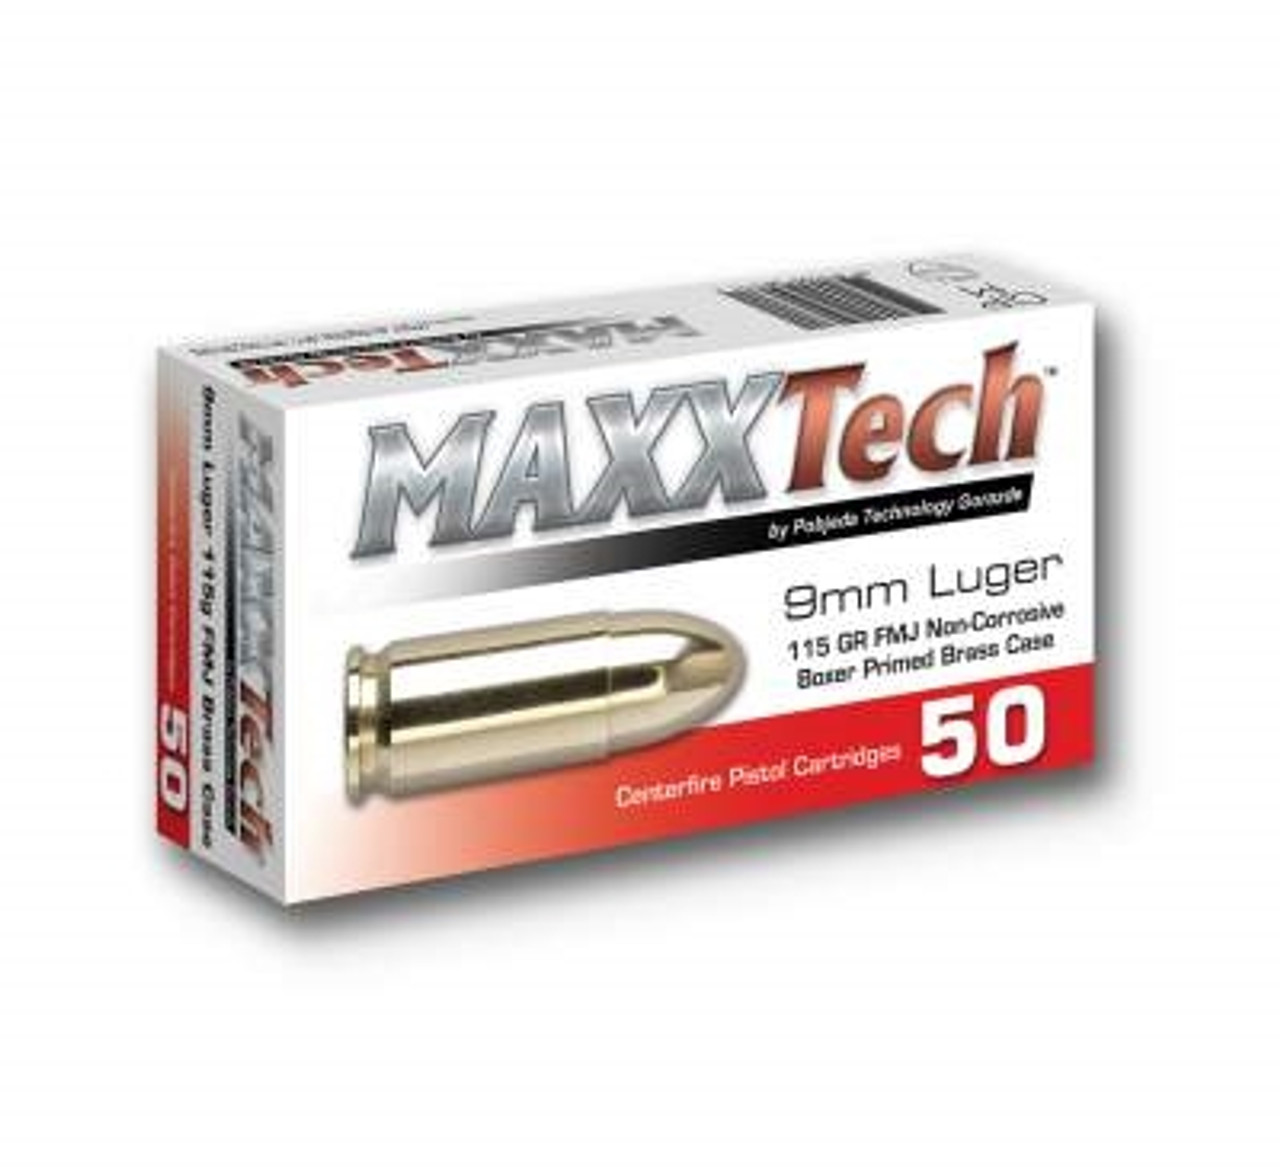 MAXXTech 9mm Ammo â€“ 1000 Rounds of 115 Grain FMJ Ammunition